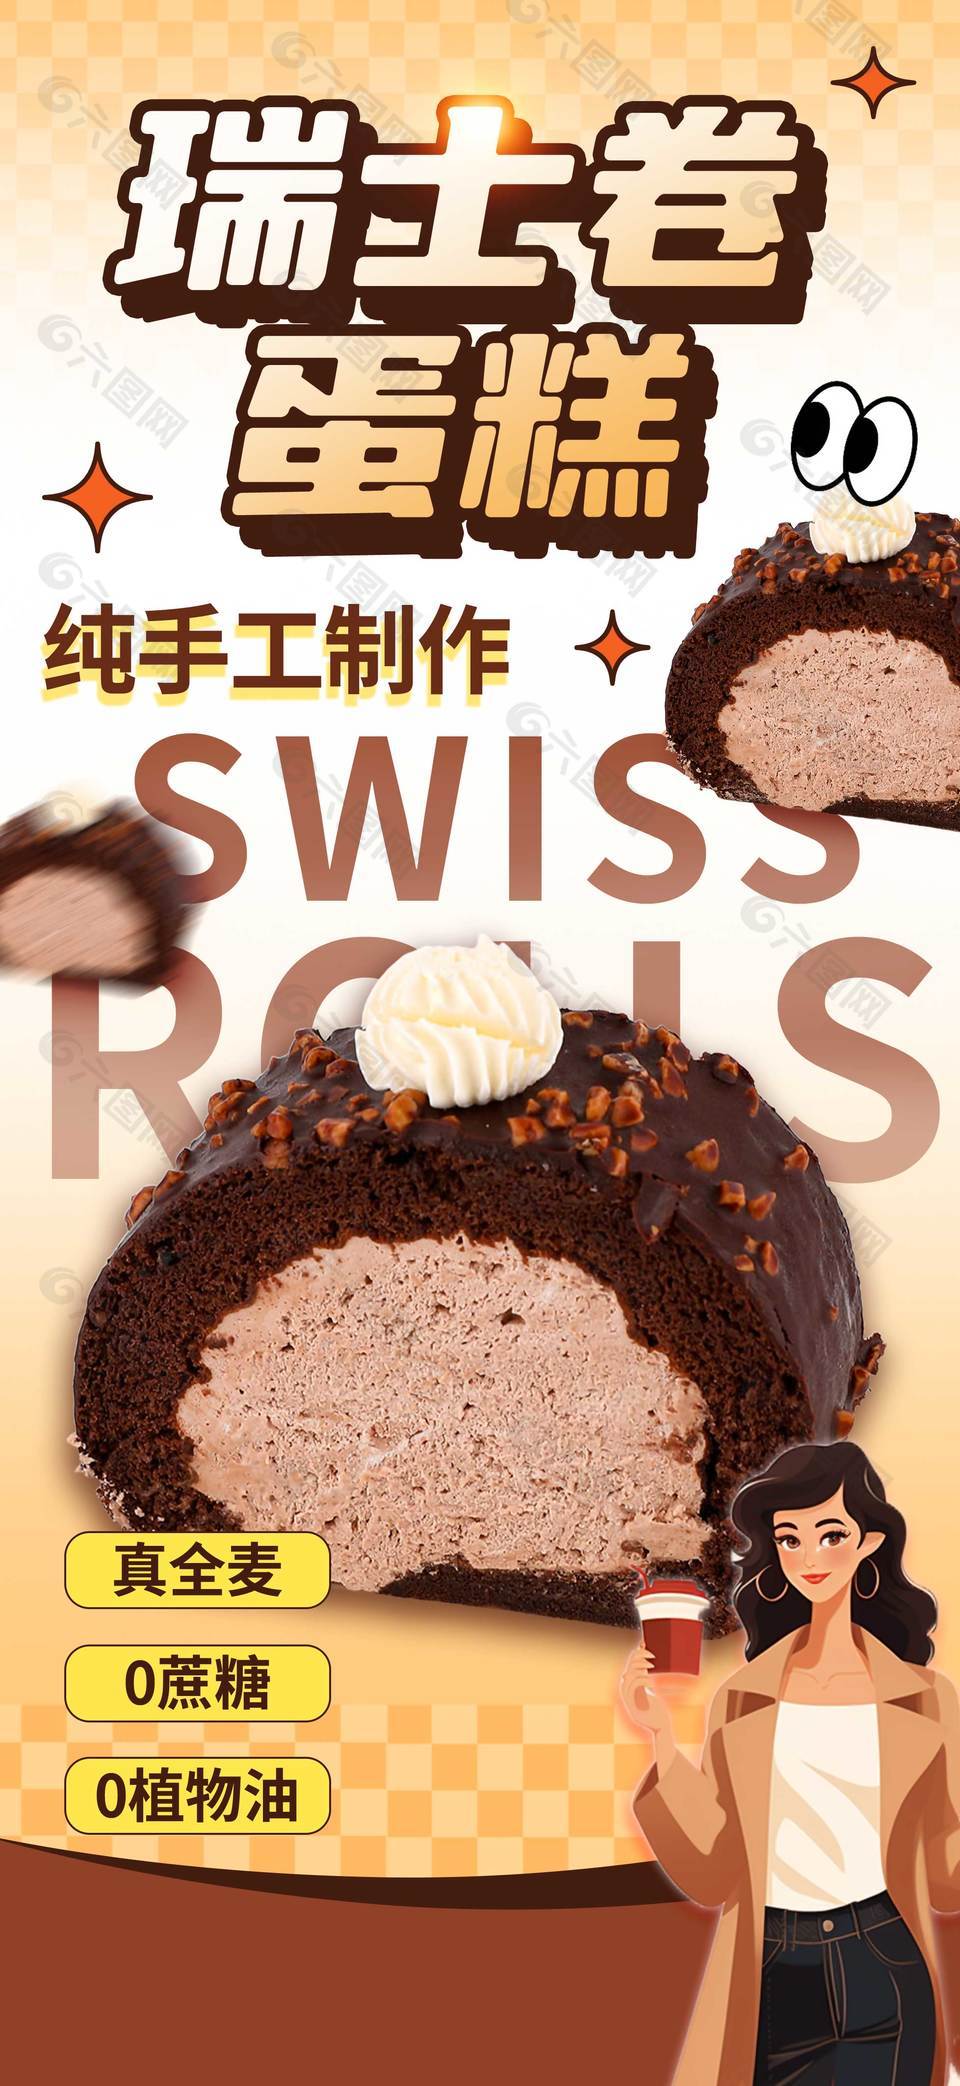 瑞士卷蛋糕创意宣传海报设计